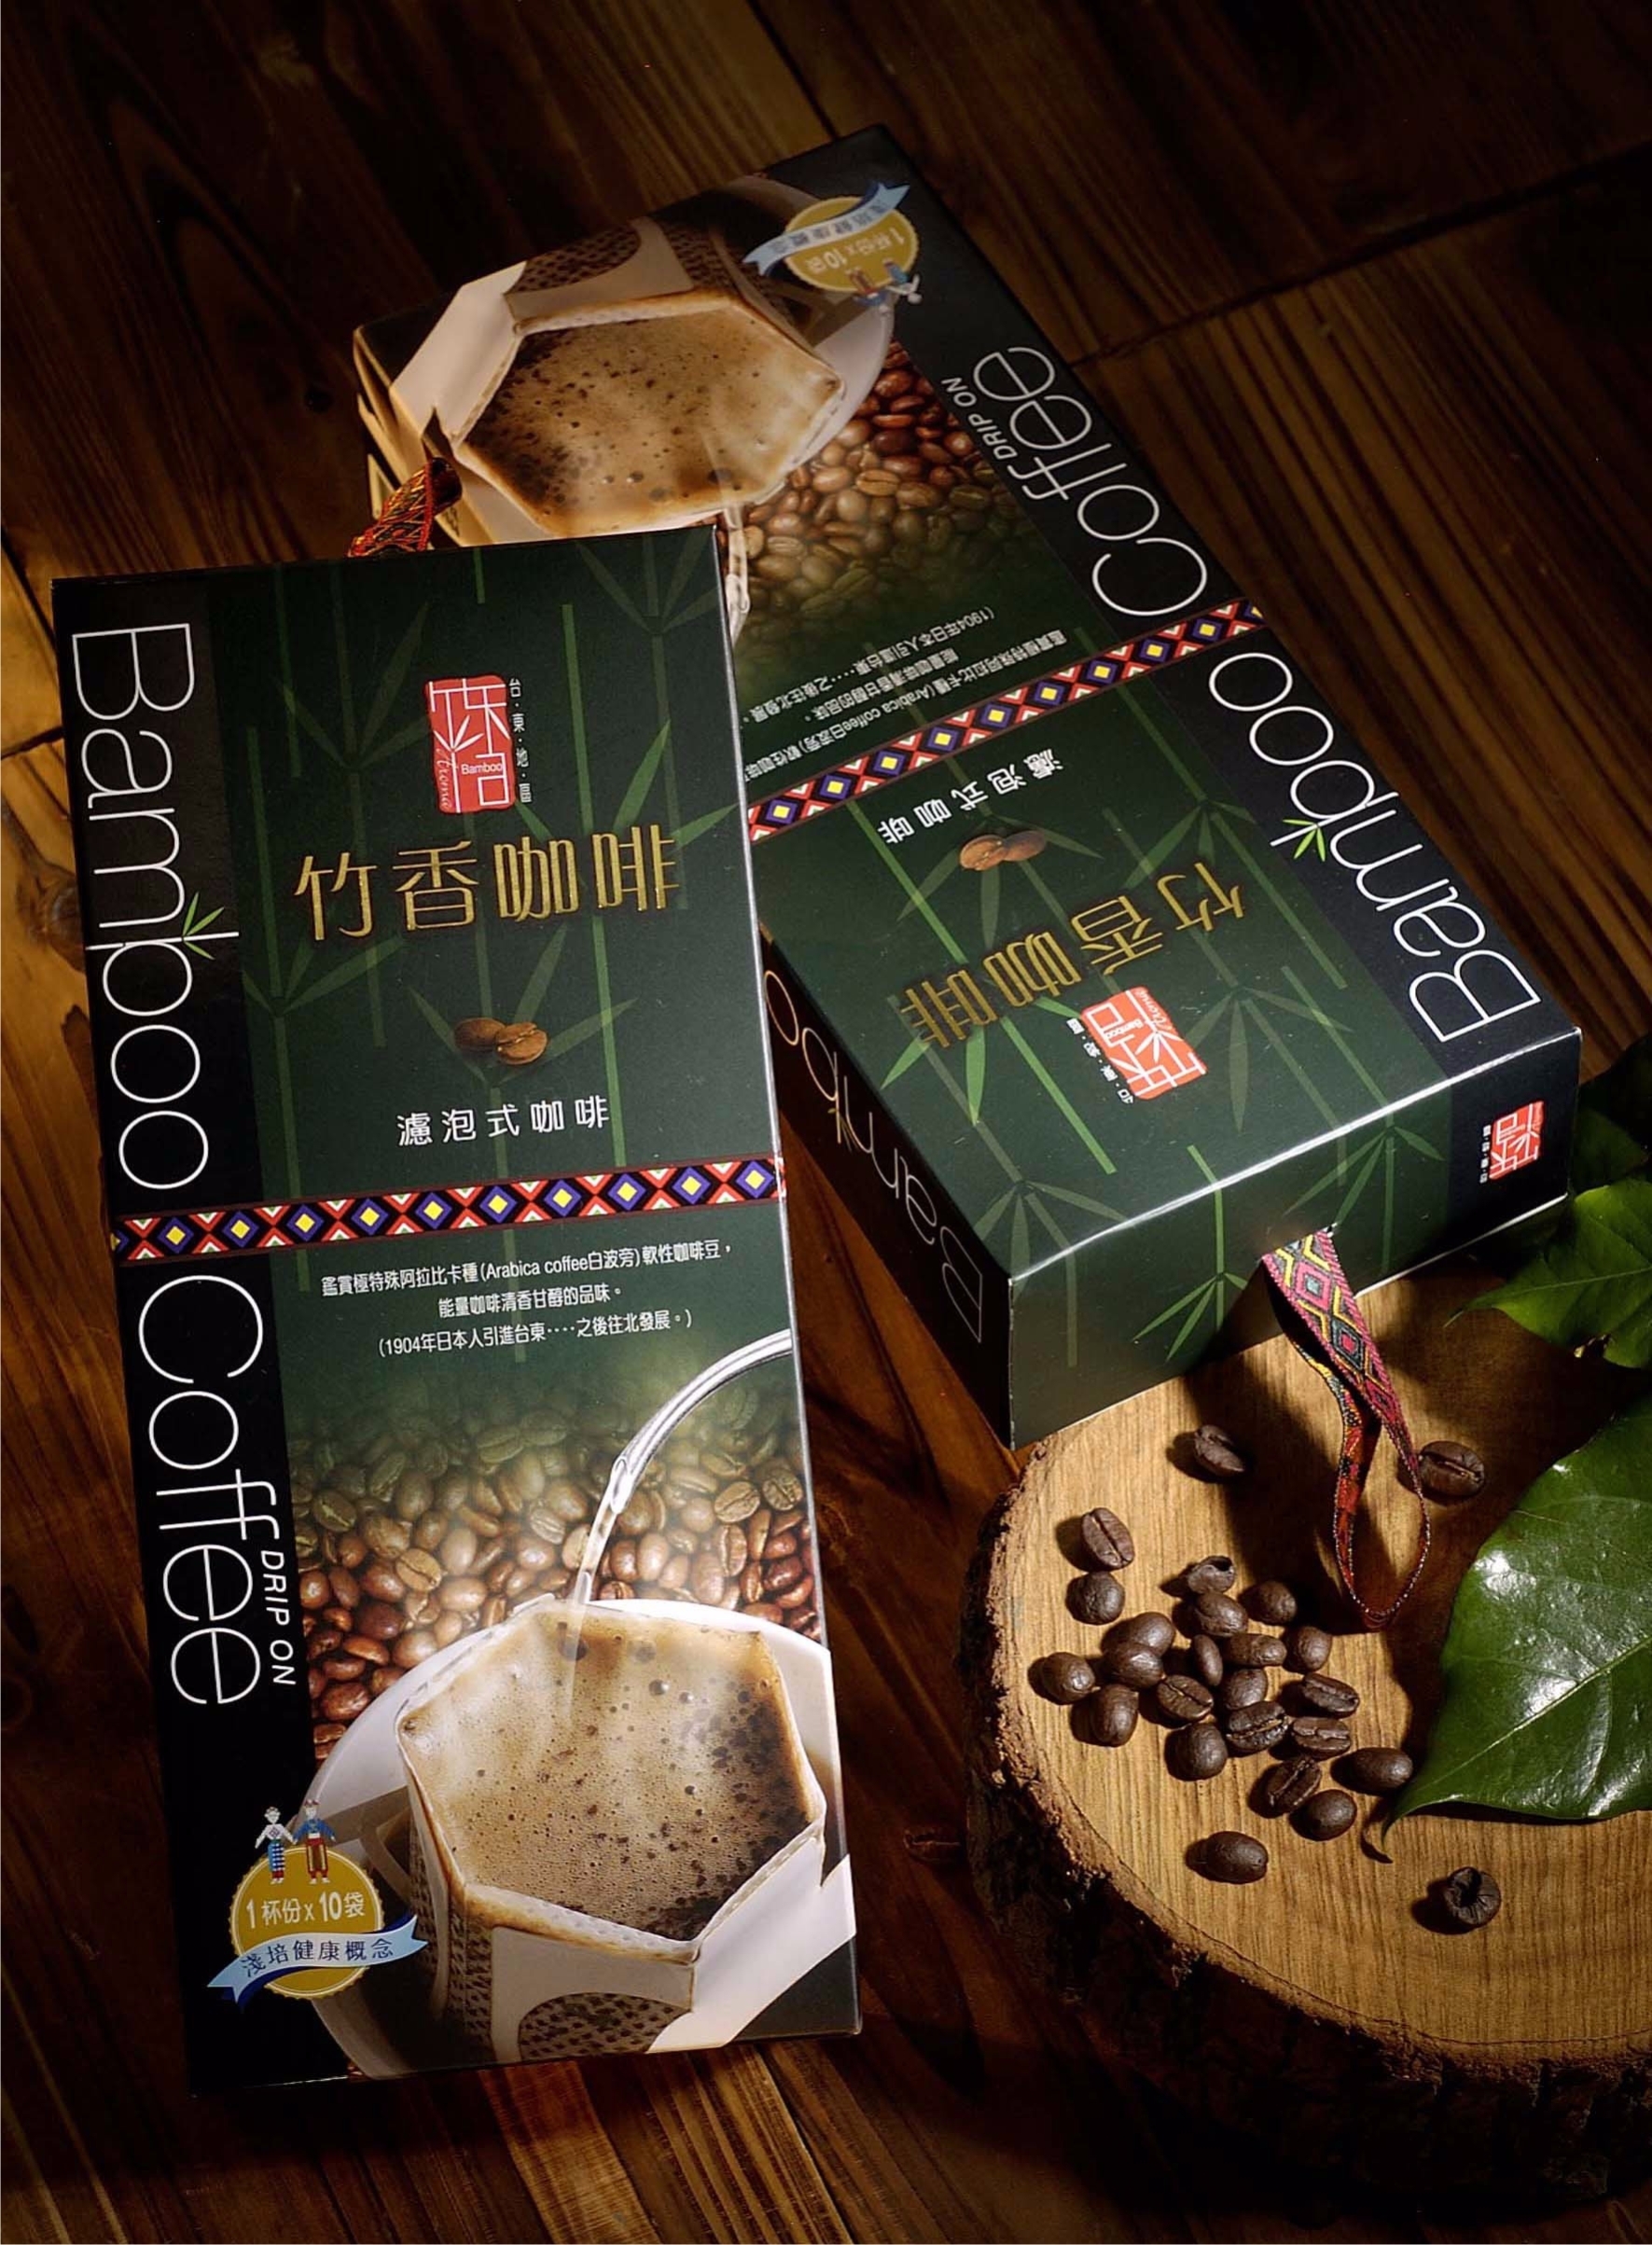 【山豬園咖啡】台東竹香咖啡濾泡式禮盒10入裝&gt;